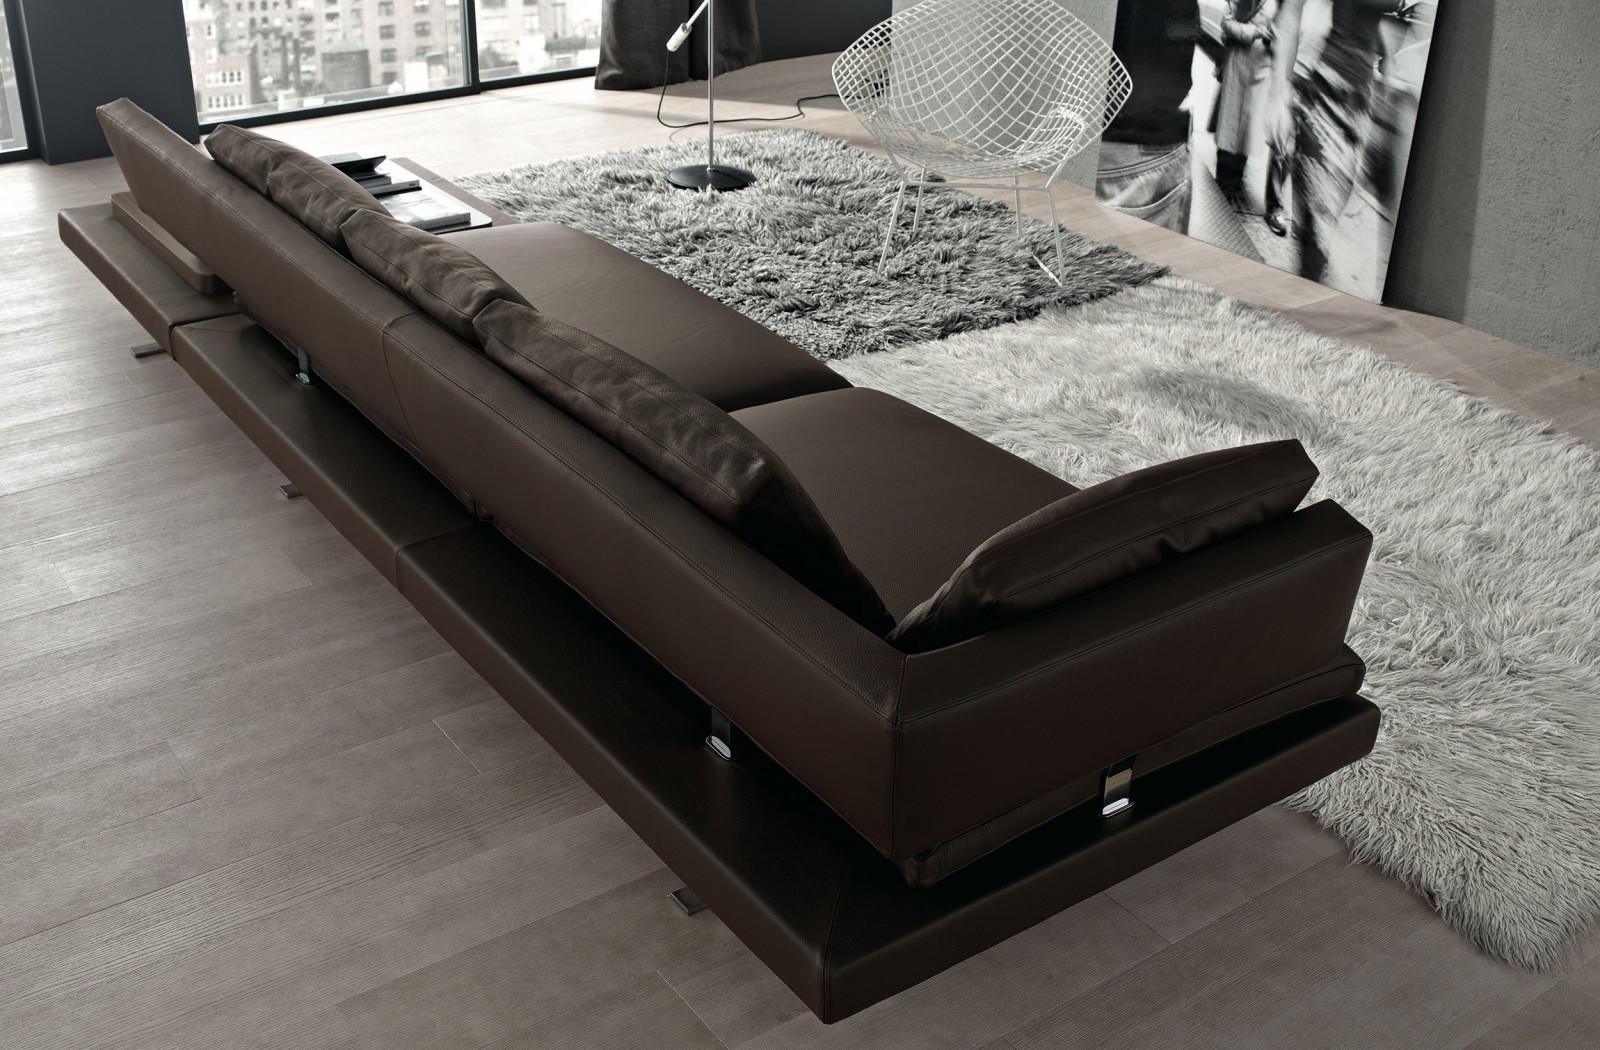 08-borderline-modern-furniture-design-misuraemme